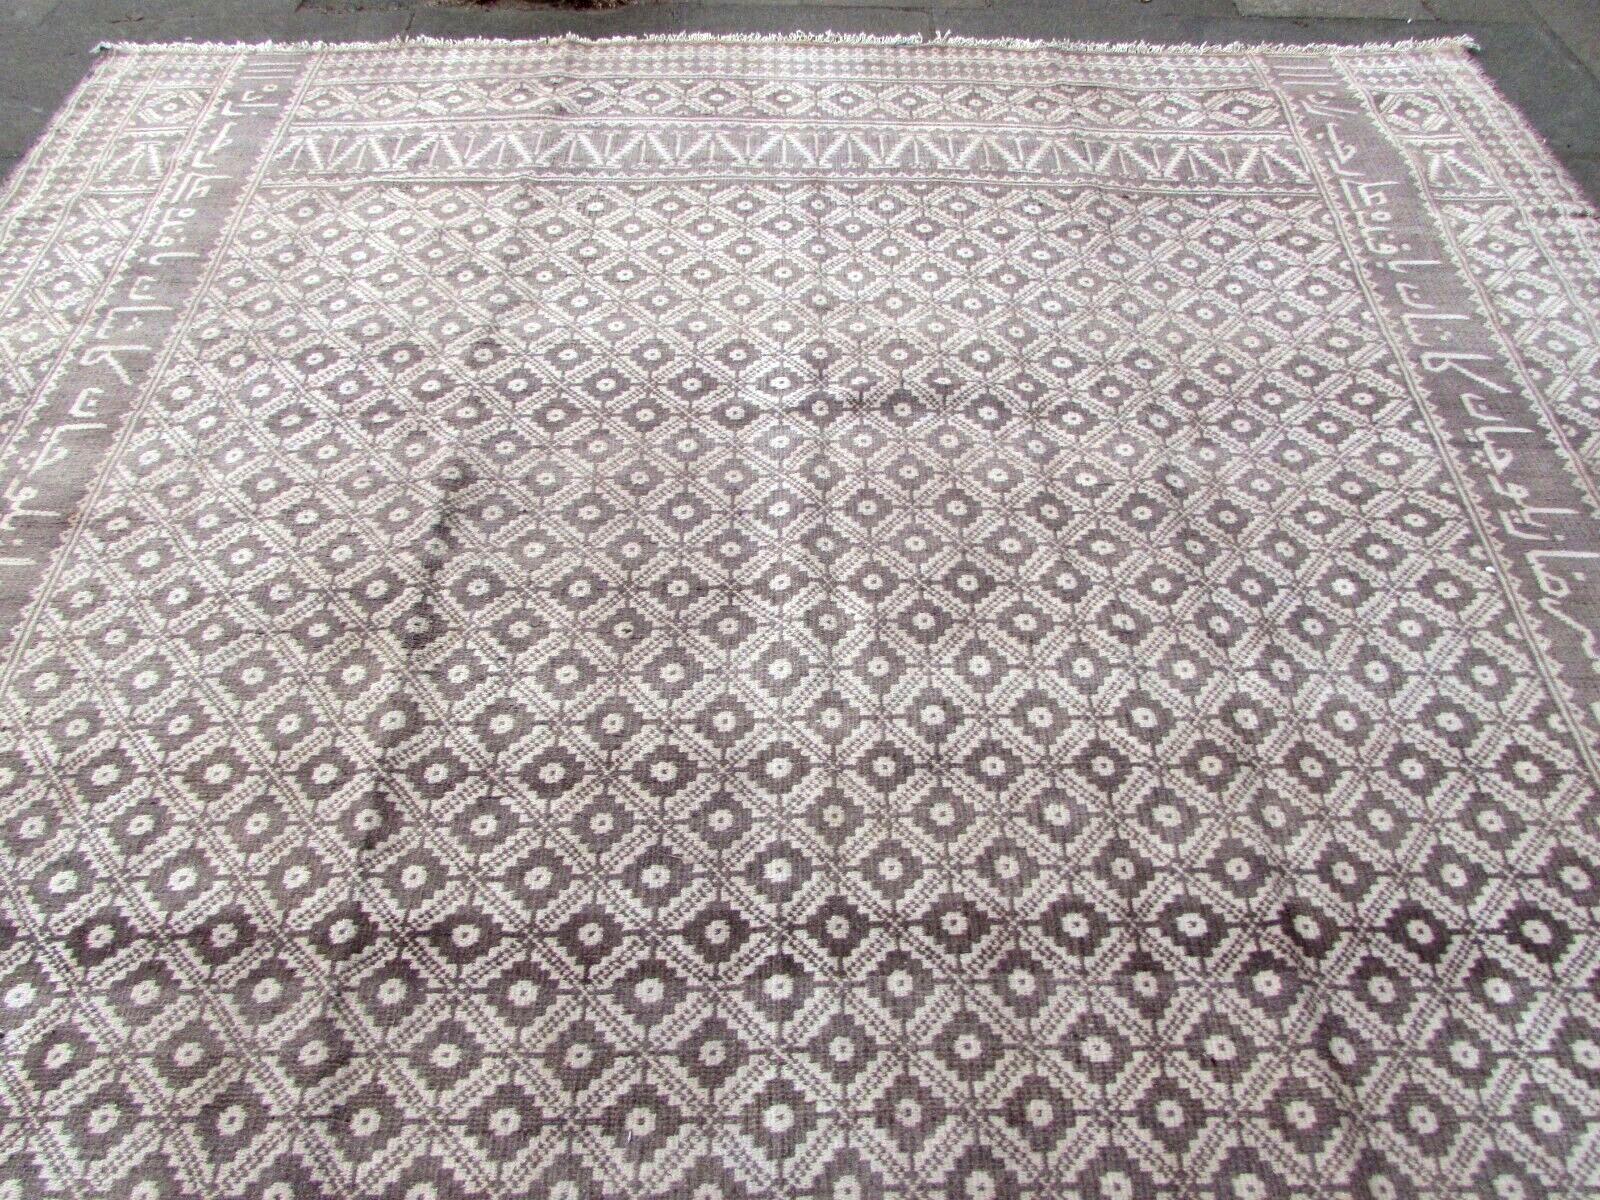 Dieser handgefertigte türkische Zilo Large Kilim Rug aus den 1970er Jahren ist ein exquisites Stück Geschichte. Er strahlt den Charme eines alten traditionellen persisch-orientalischen Kelims aus. Mit einer beachtlichen Größe von 317 x 437 cm (10,4'